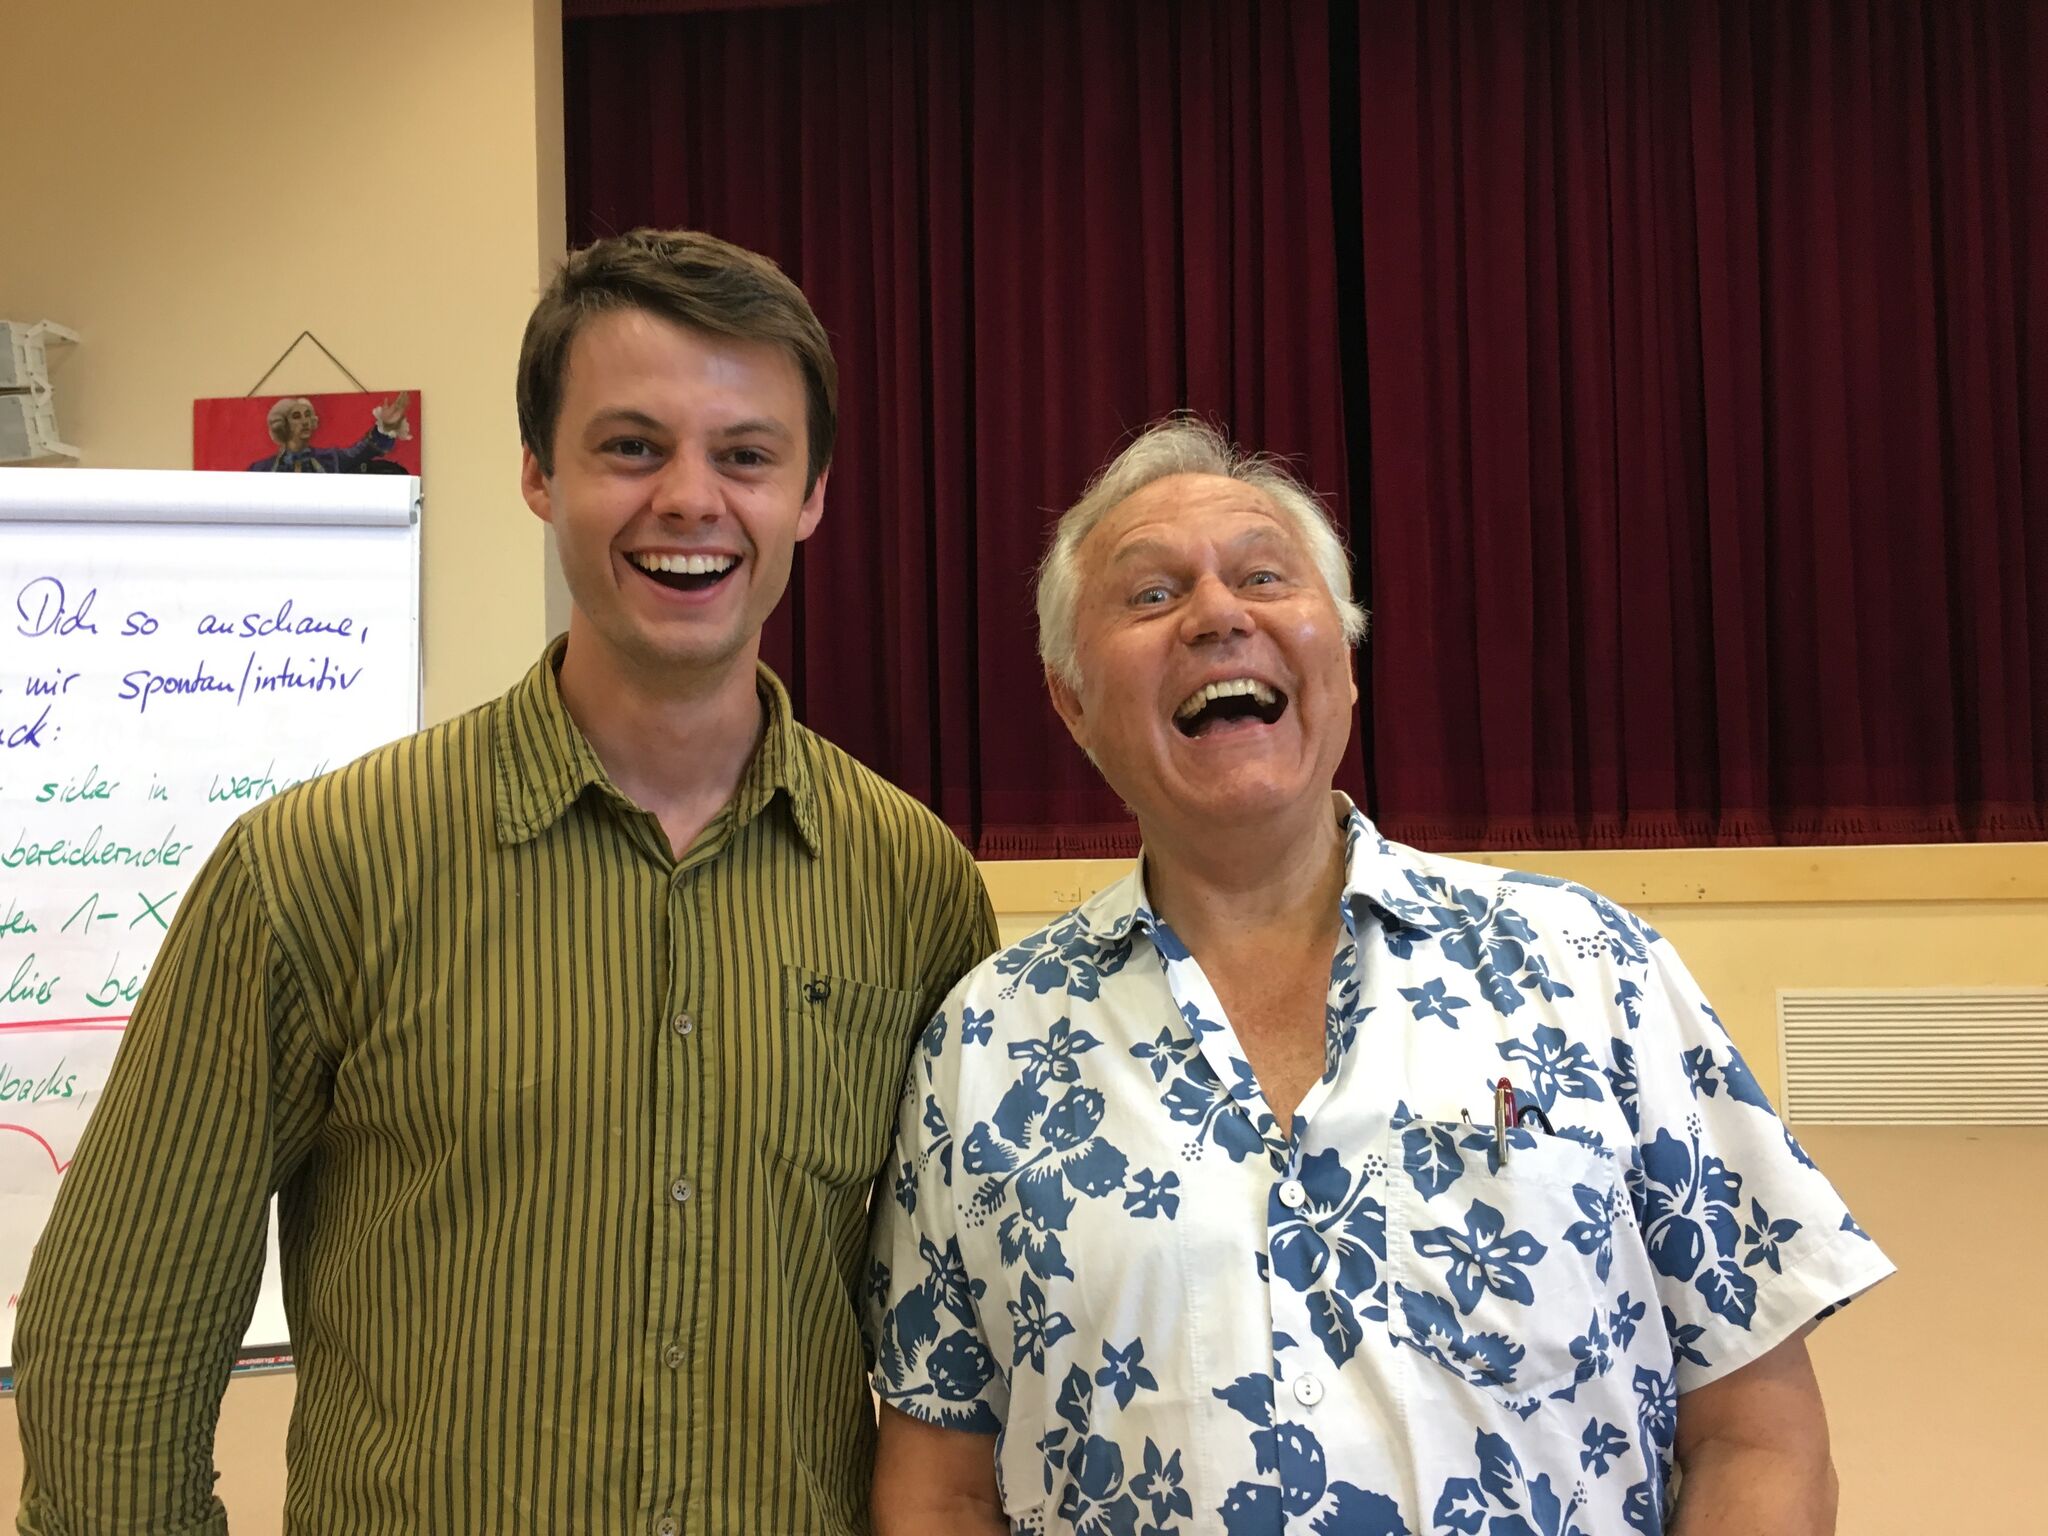 Coaching - Stefan Landes und Dr. Gunther Schmidt lachen gemeinsam in die Kamera.